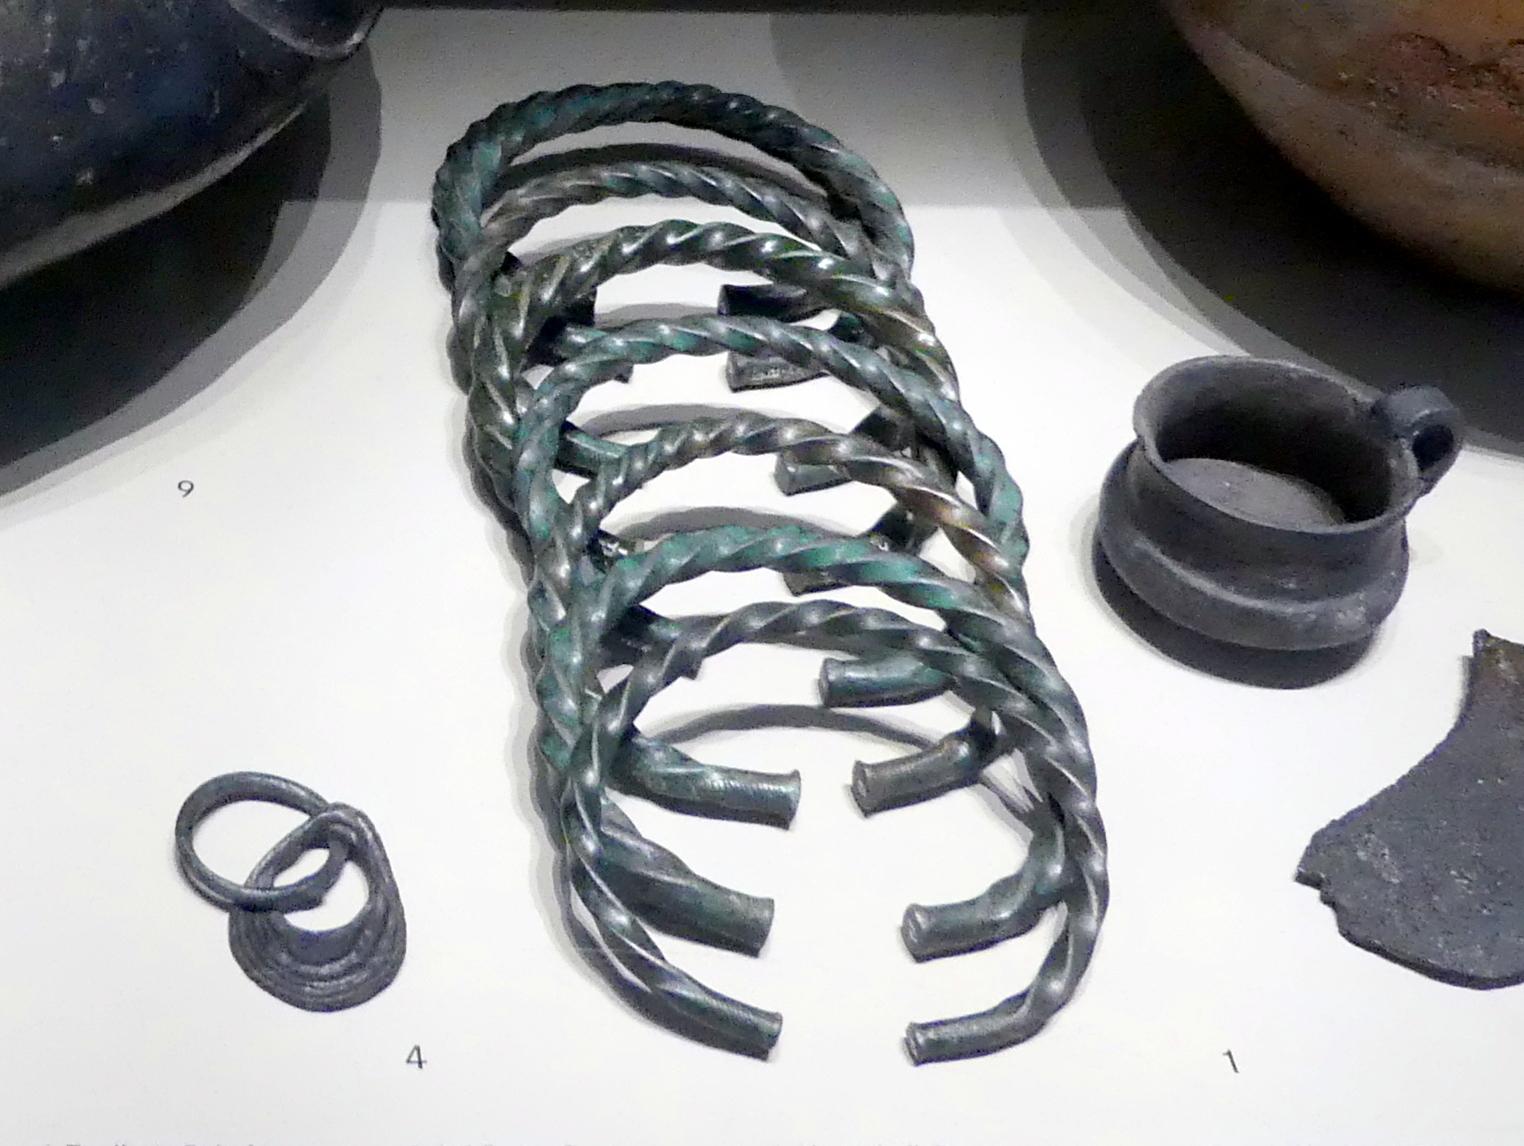 Tordierte Beinrige, 1300 - 1100 v. Chr.